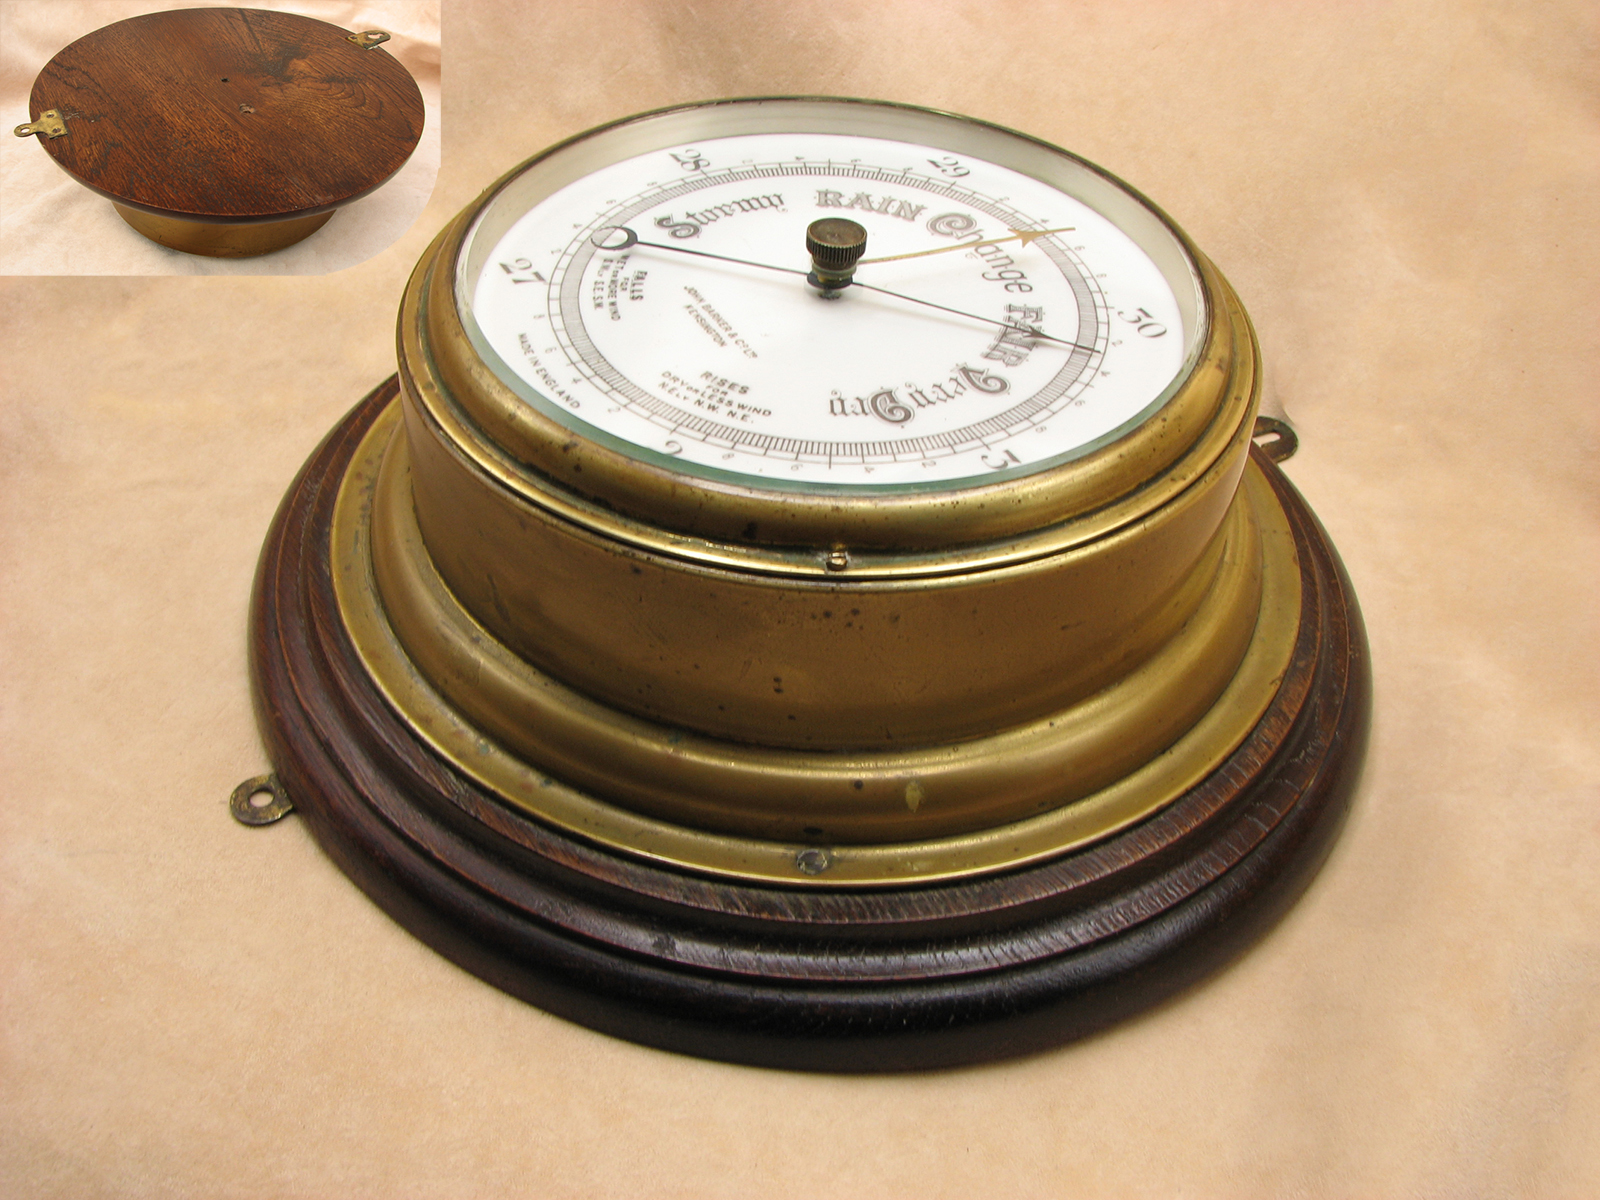 Antique Ships aneroid barometer signed John Barker Kensington